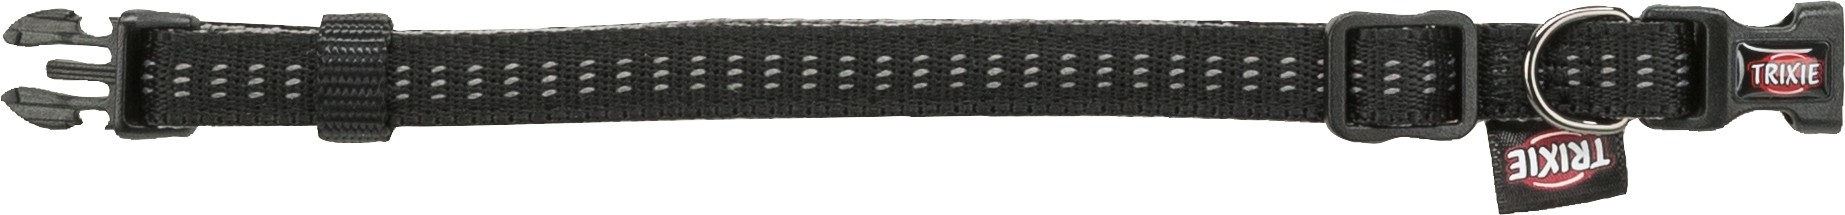 Softline Elégance Hundehalsband grau / schwarz - verschiedene Größen erhältlich